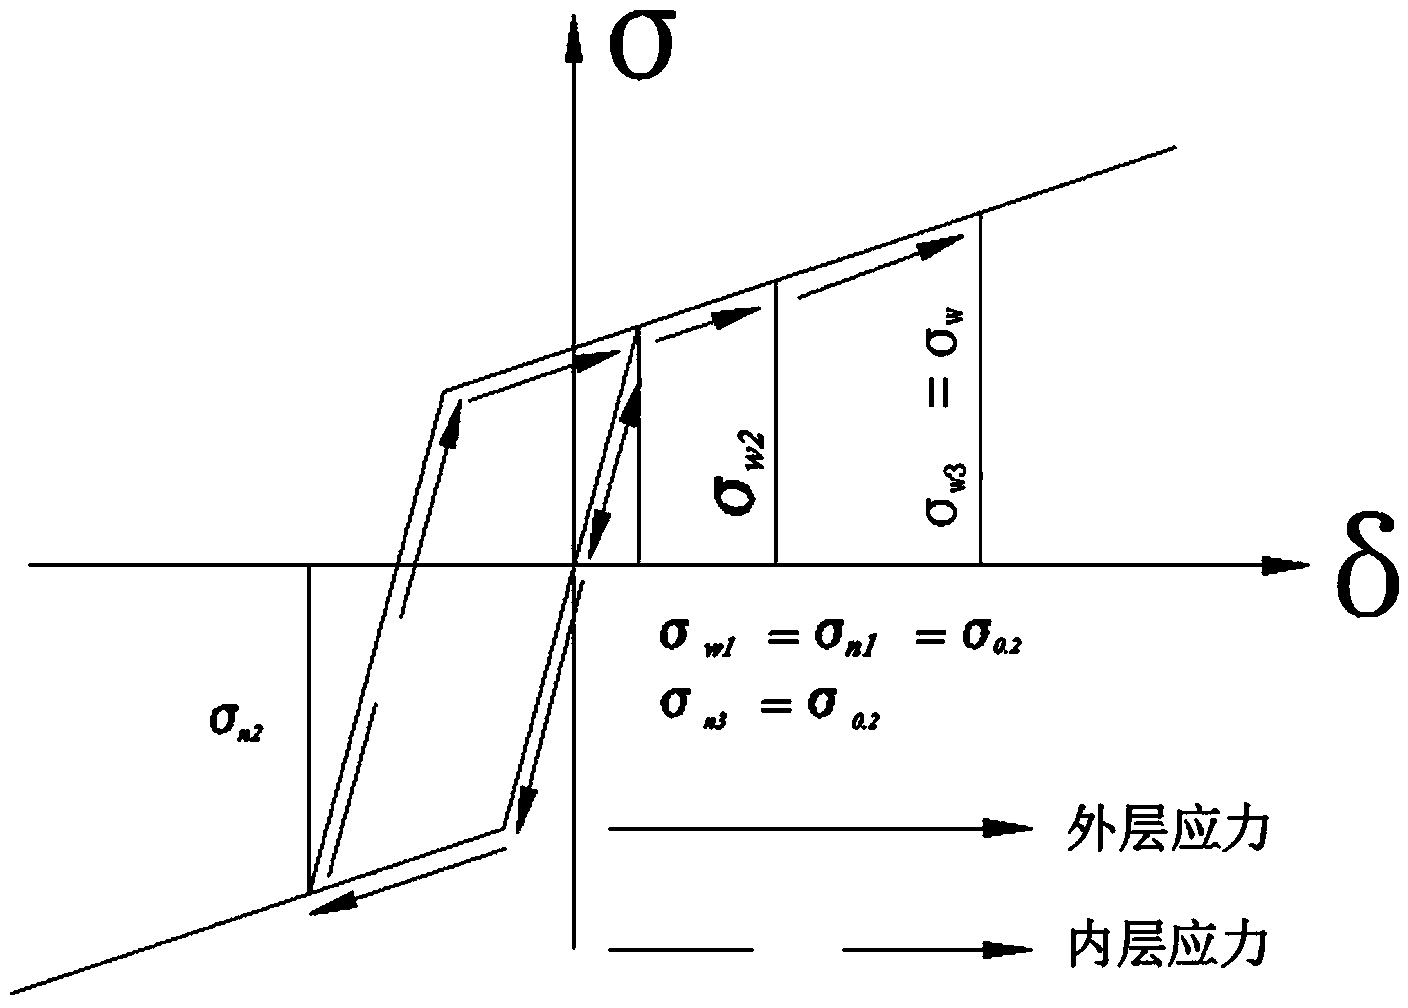 Three-dimensional multi-curvature part bending method